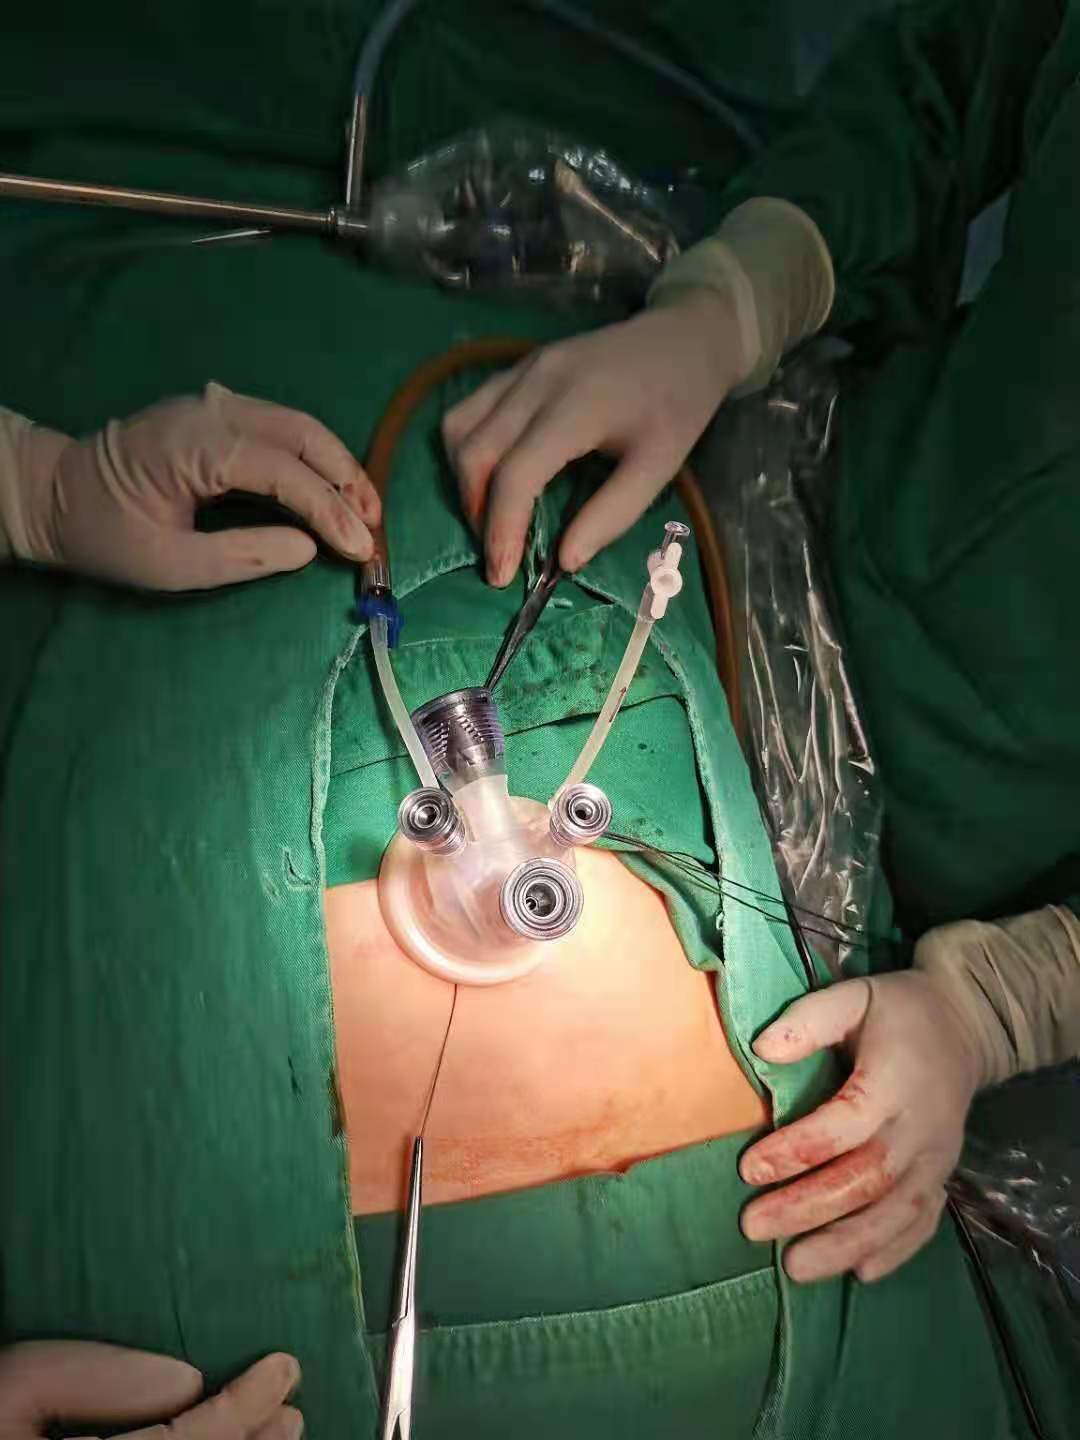 宫外孕手术微创图片图片